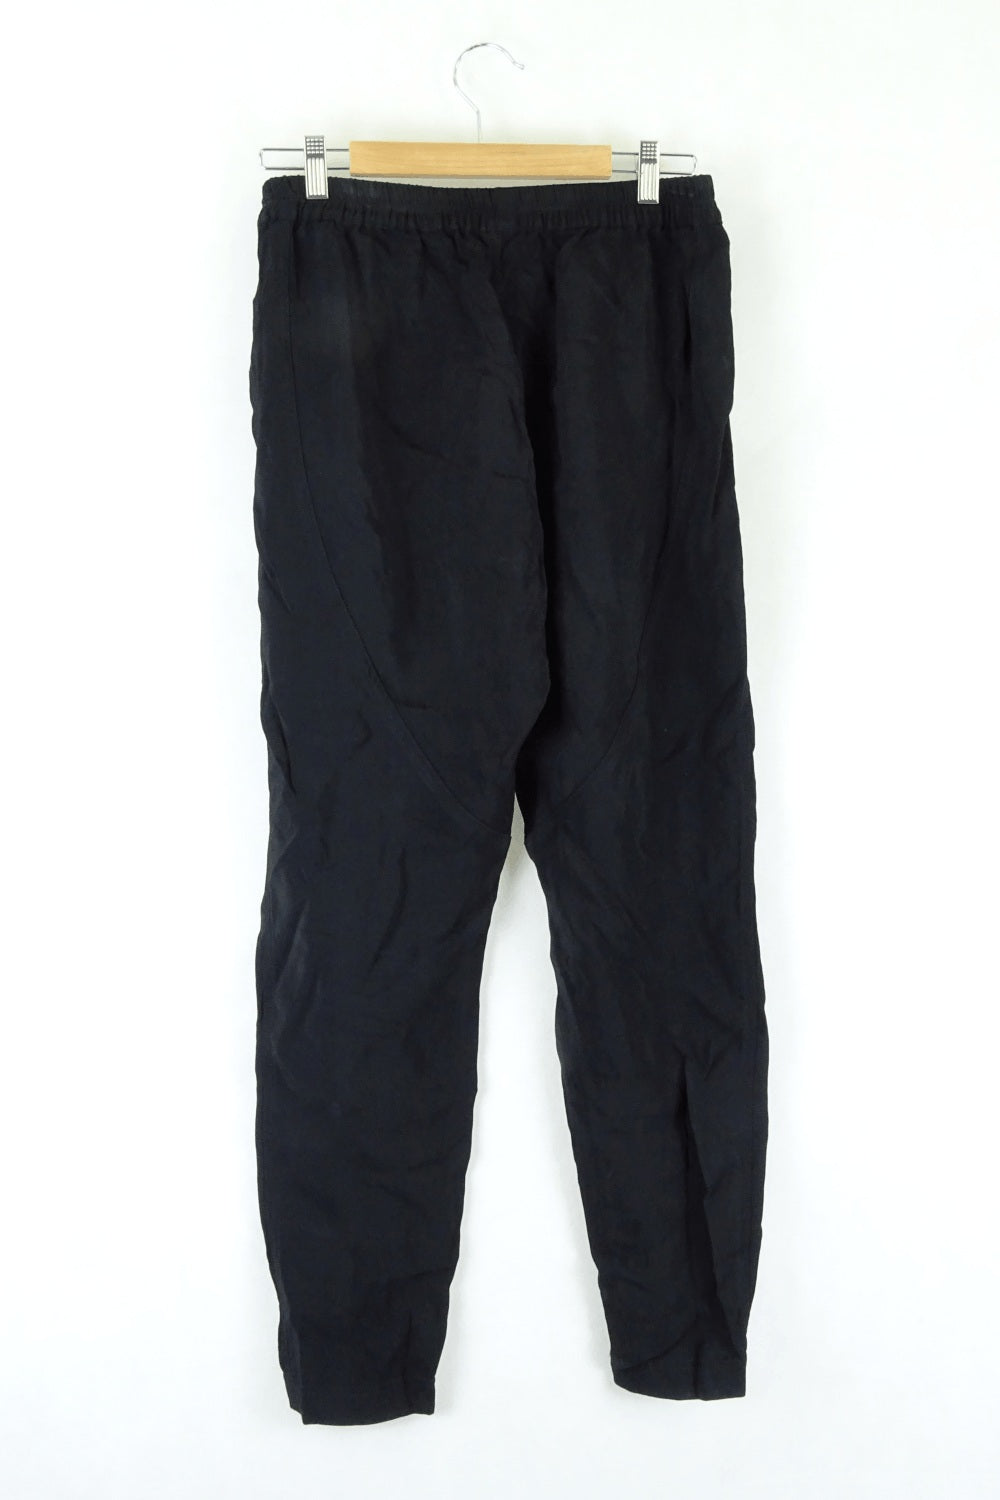 Mela Purdie Black Casual Pants 8